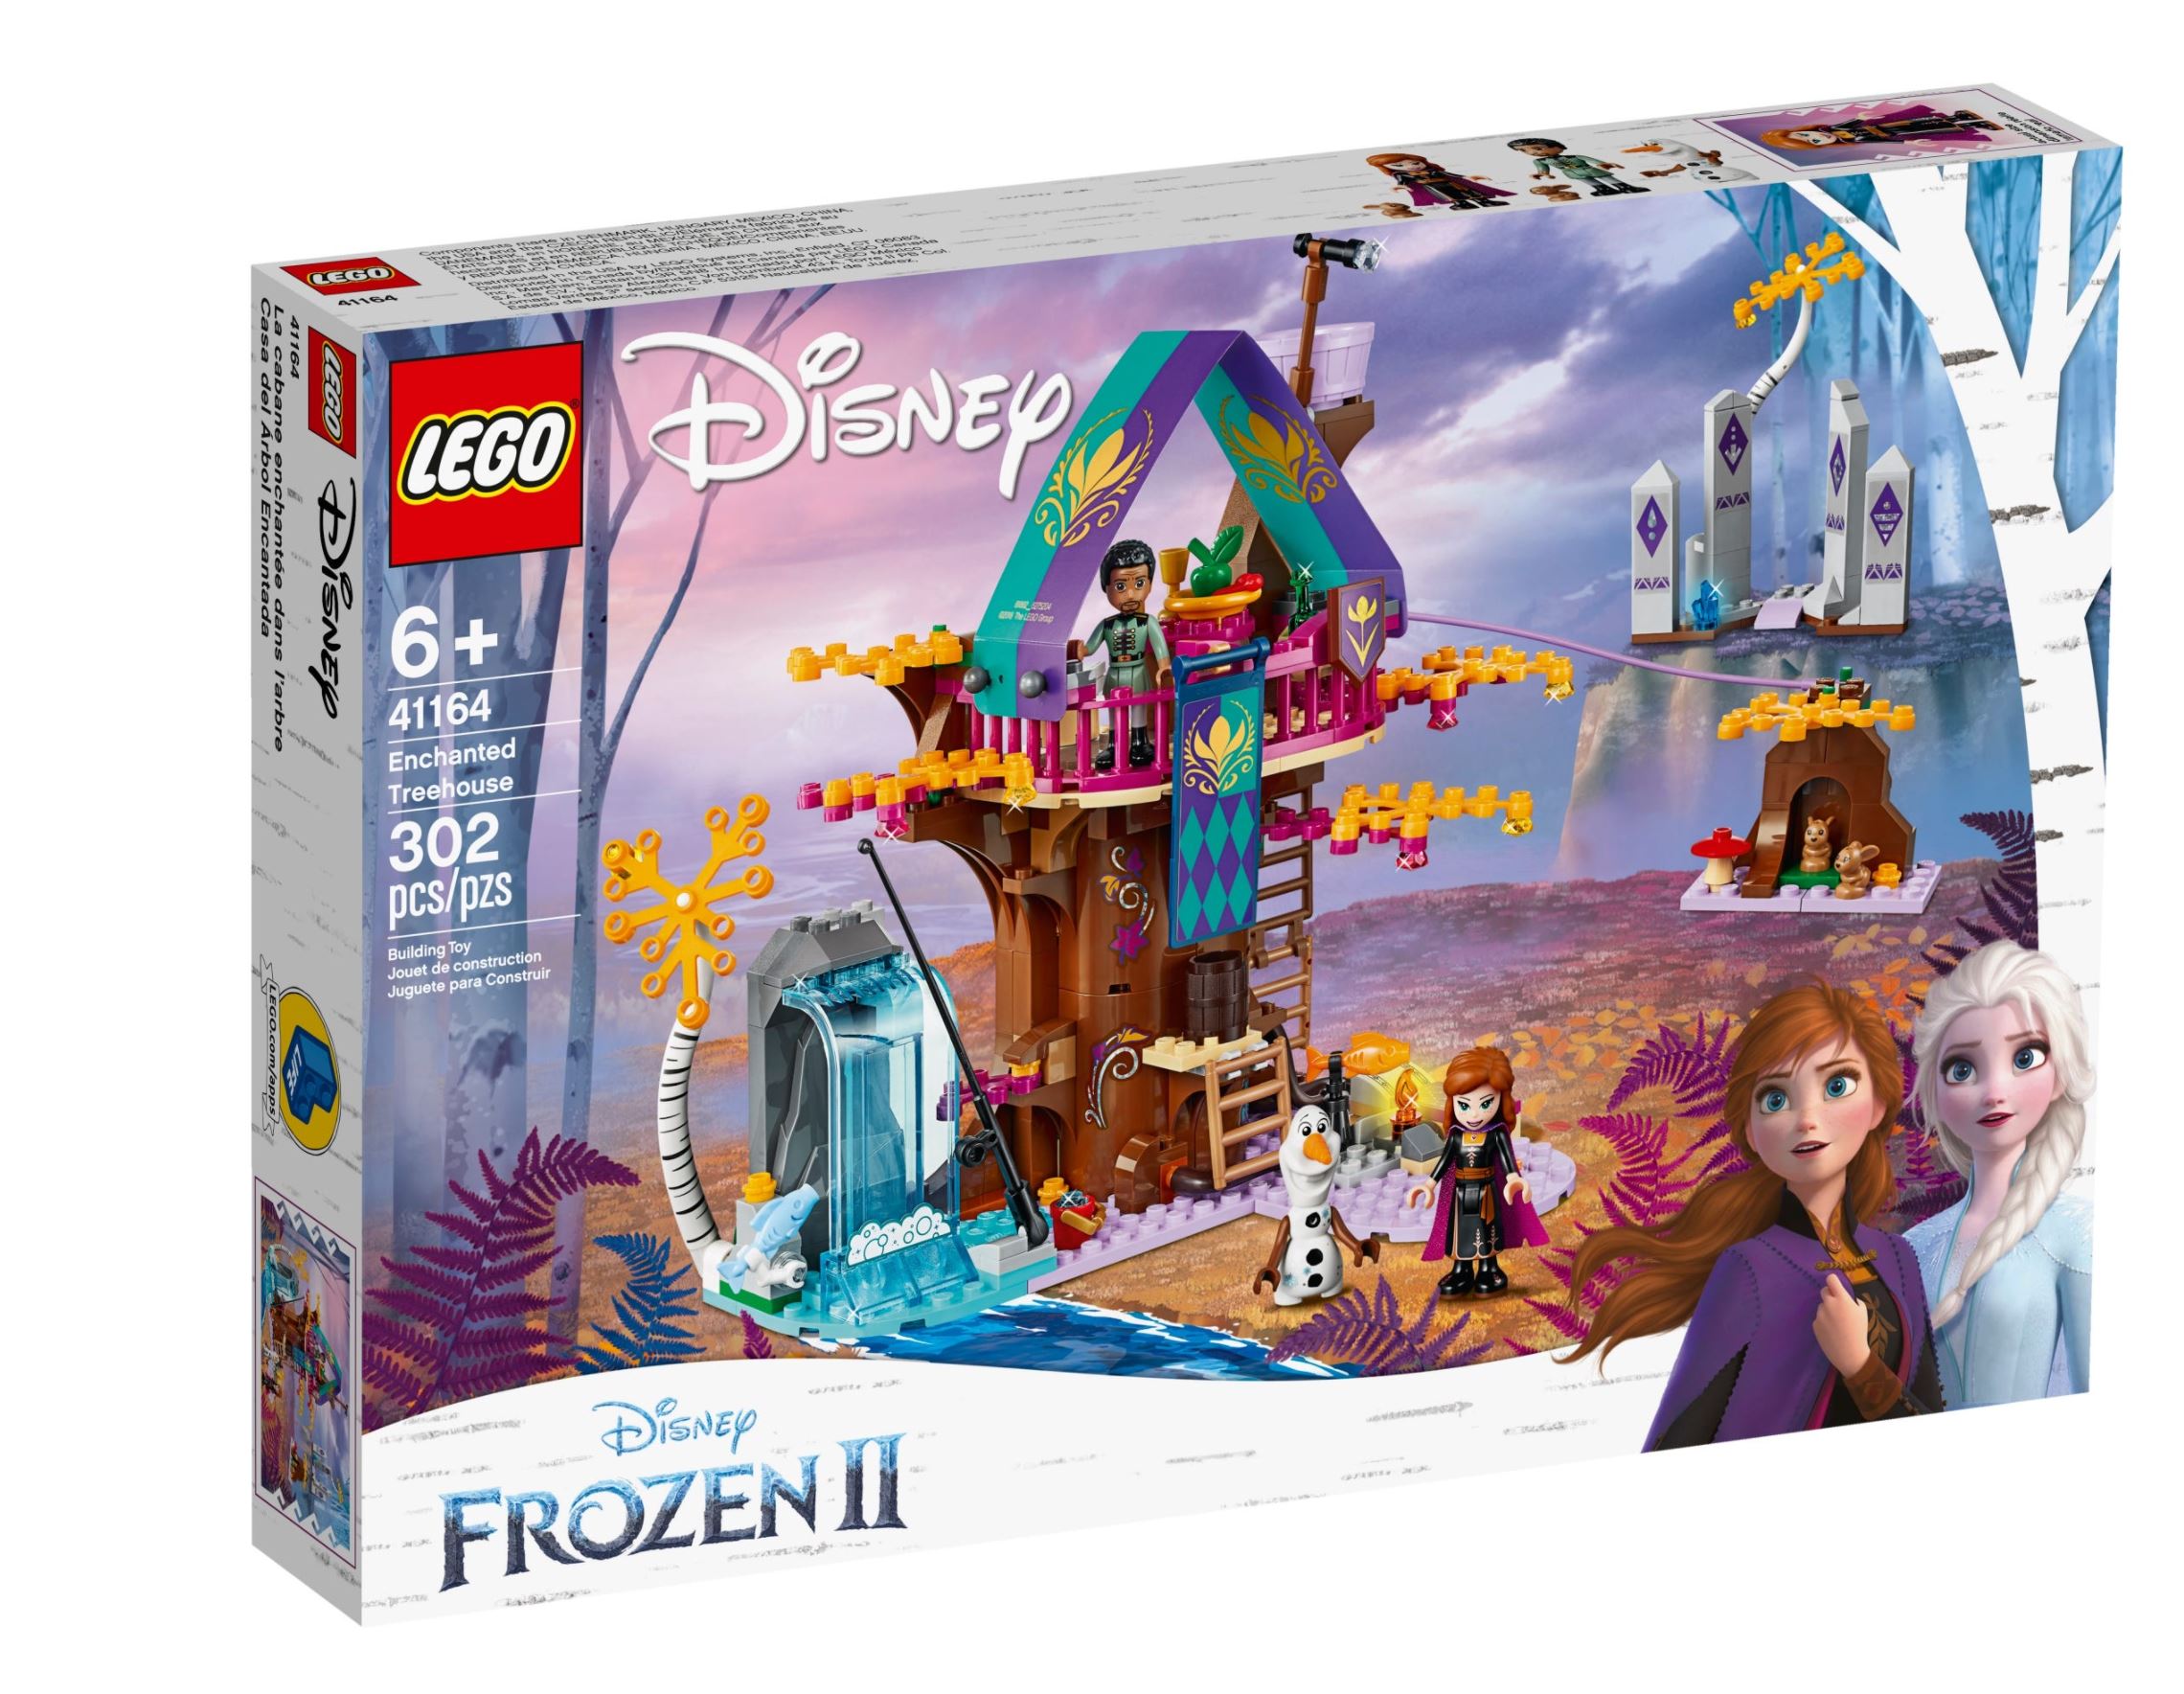 Verzaubertes Baumhaus Lego Disney Frozen 2, 302 Teile, ab 4 Jahren